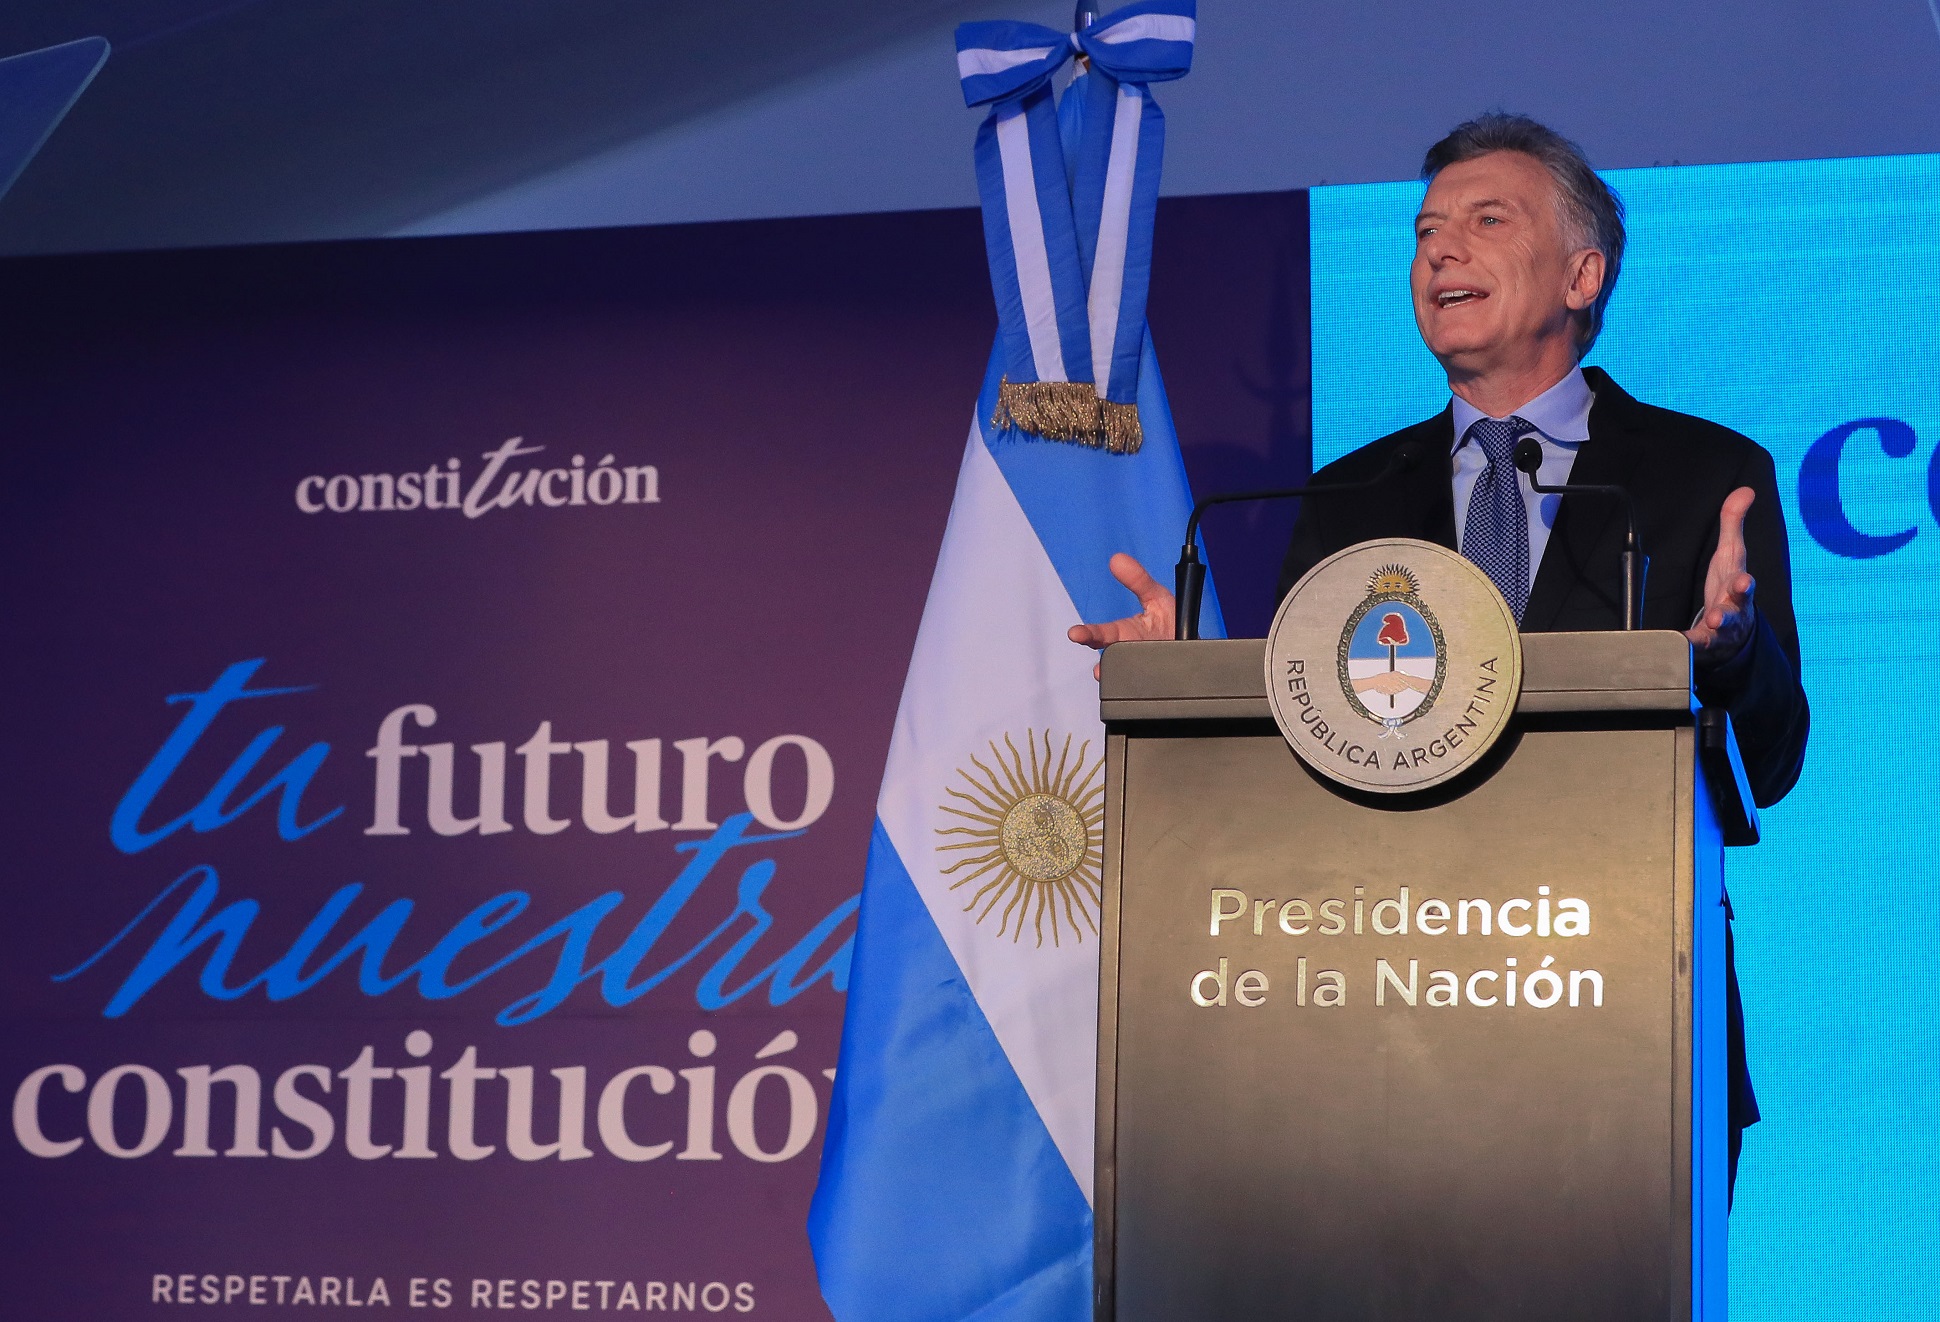 La posibilidad de seguir transformando para siempre a la Argentina está en nuestras manos 